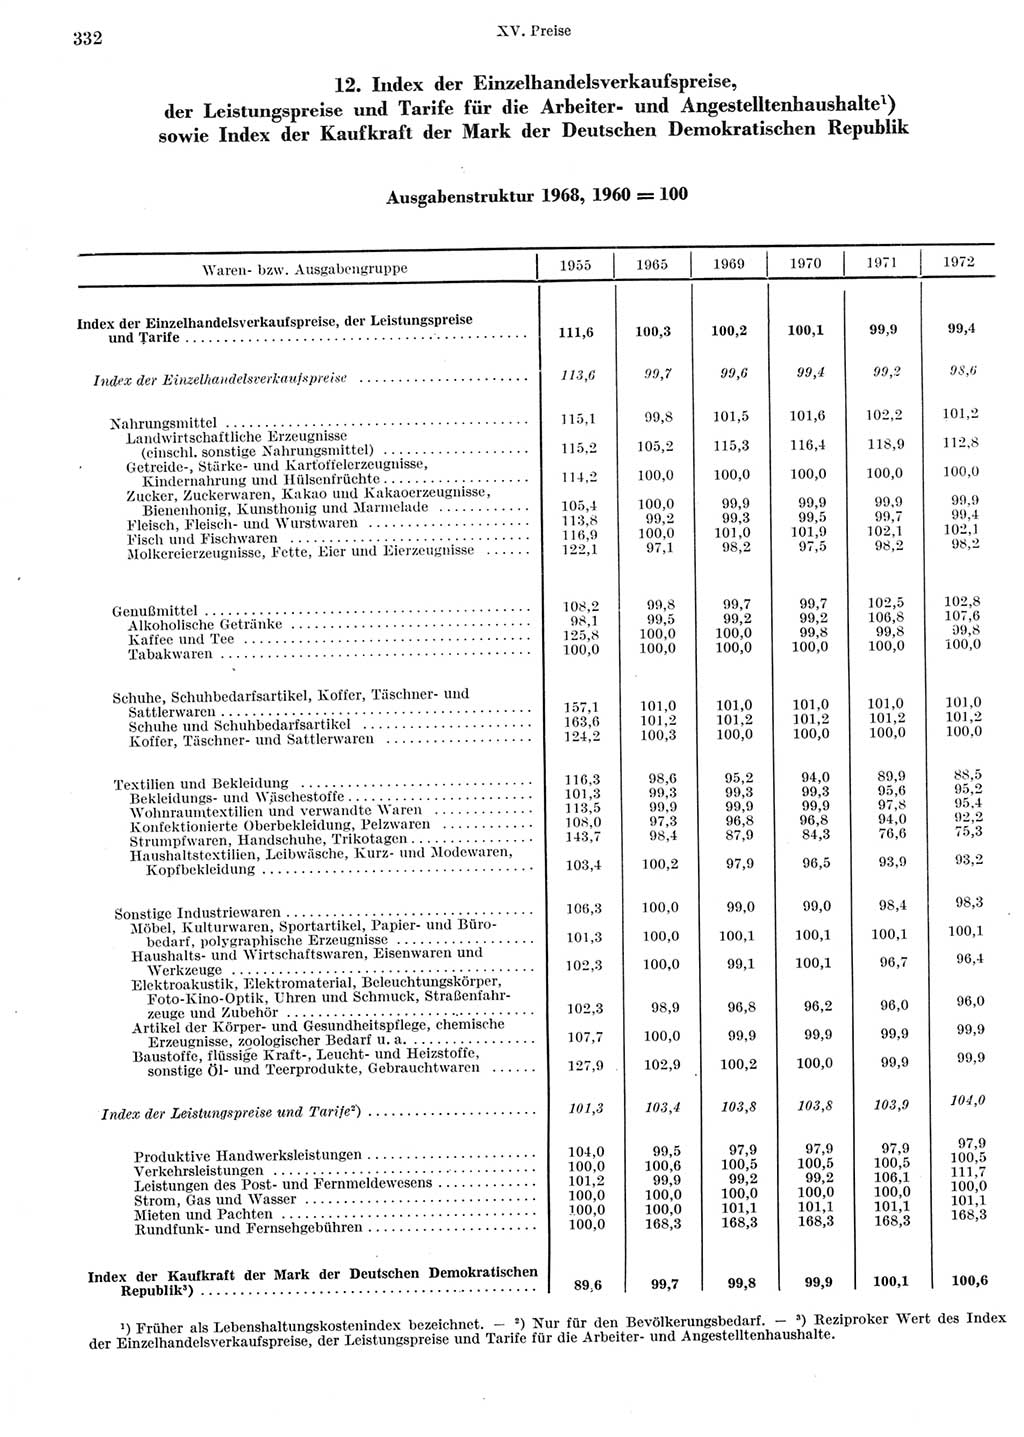 Statistisches Jahrbuch der Deutschen Demokratischen Republik (DDR) 1973, Seite 332 (Stat. Jb. DDR 1973, S. 332)